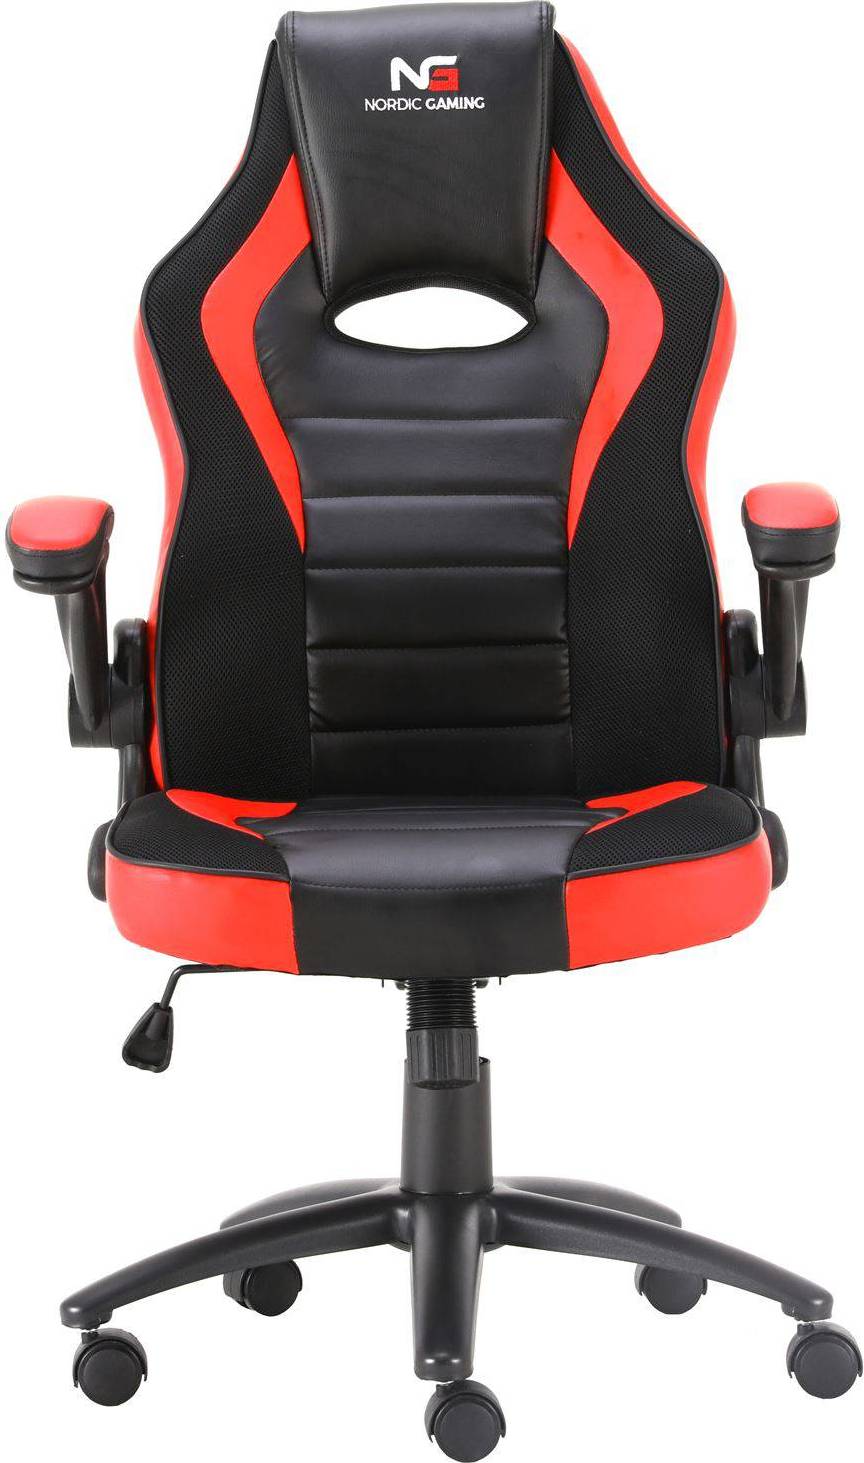  Bild på Nordic Gaming Charger V2 Gaming Chair - Black/Red gamingstol